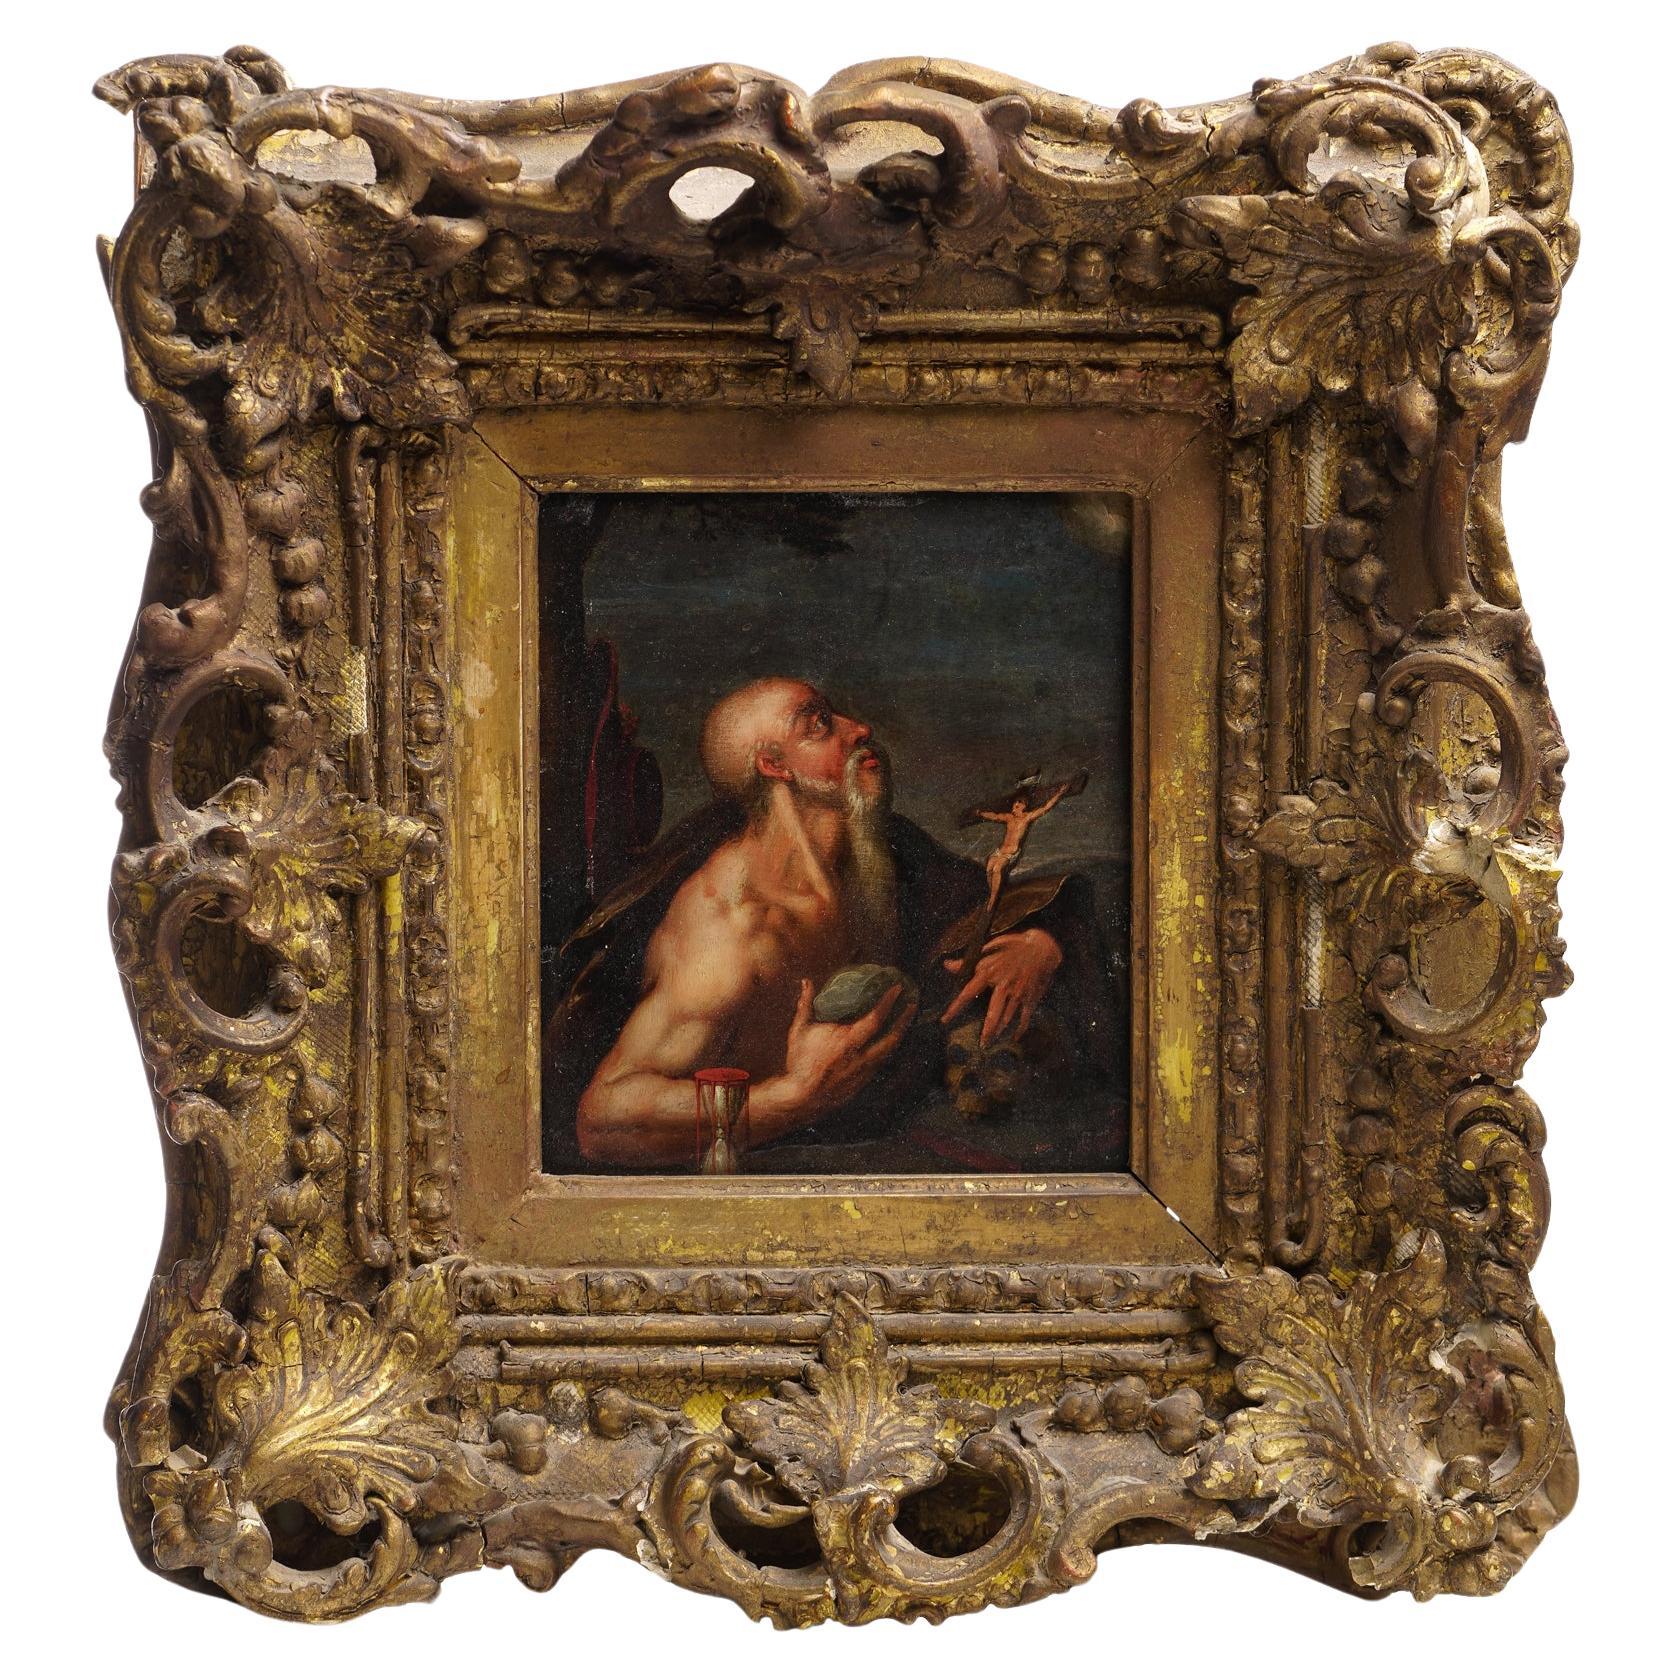 Ölgemälde auf Kupferporträt aus dem 17. Jahrhundert – St. Jerome